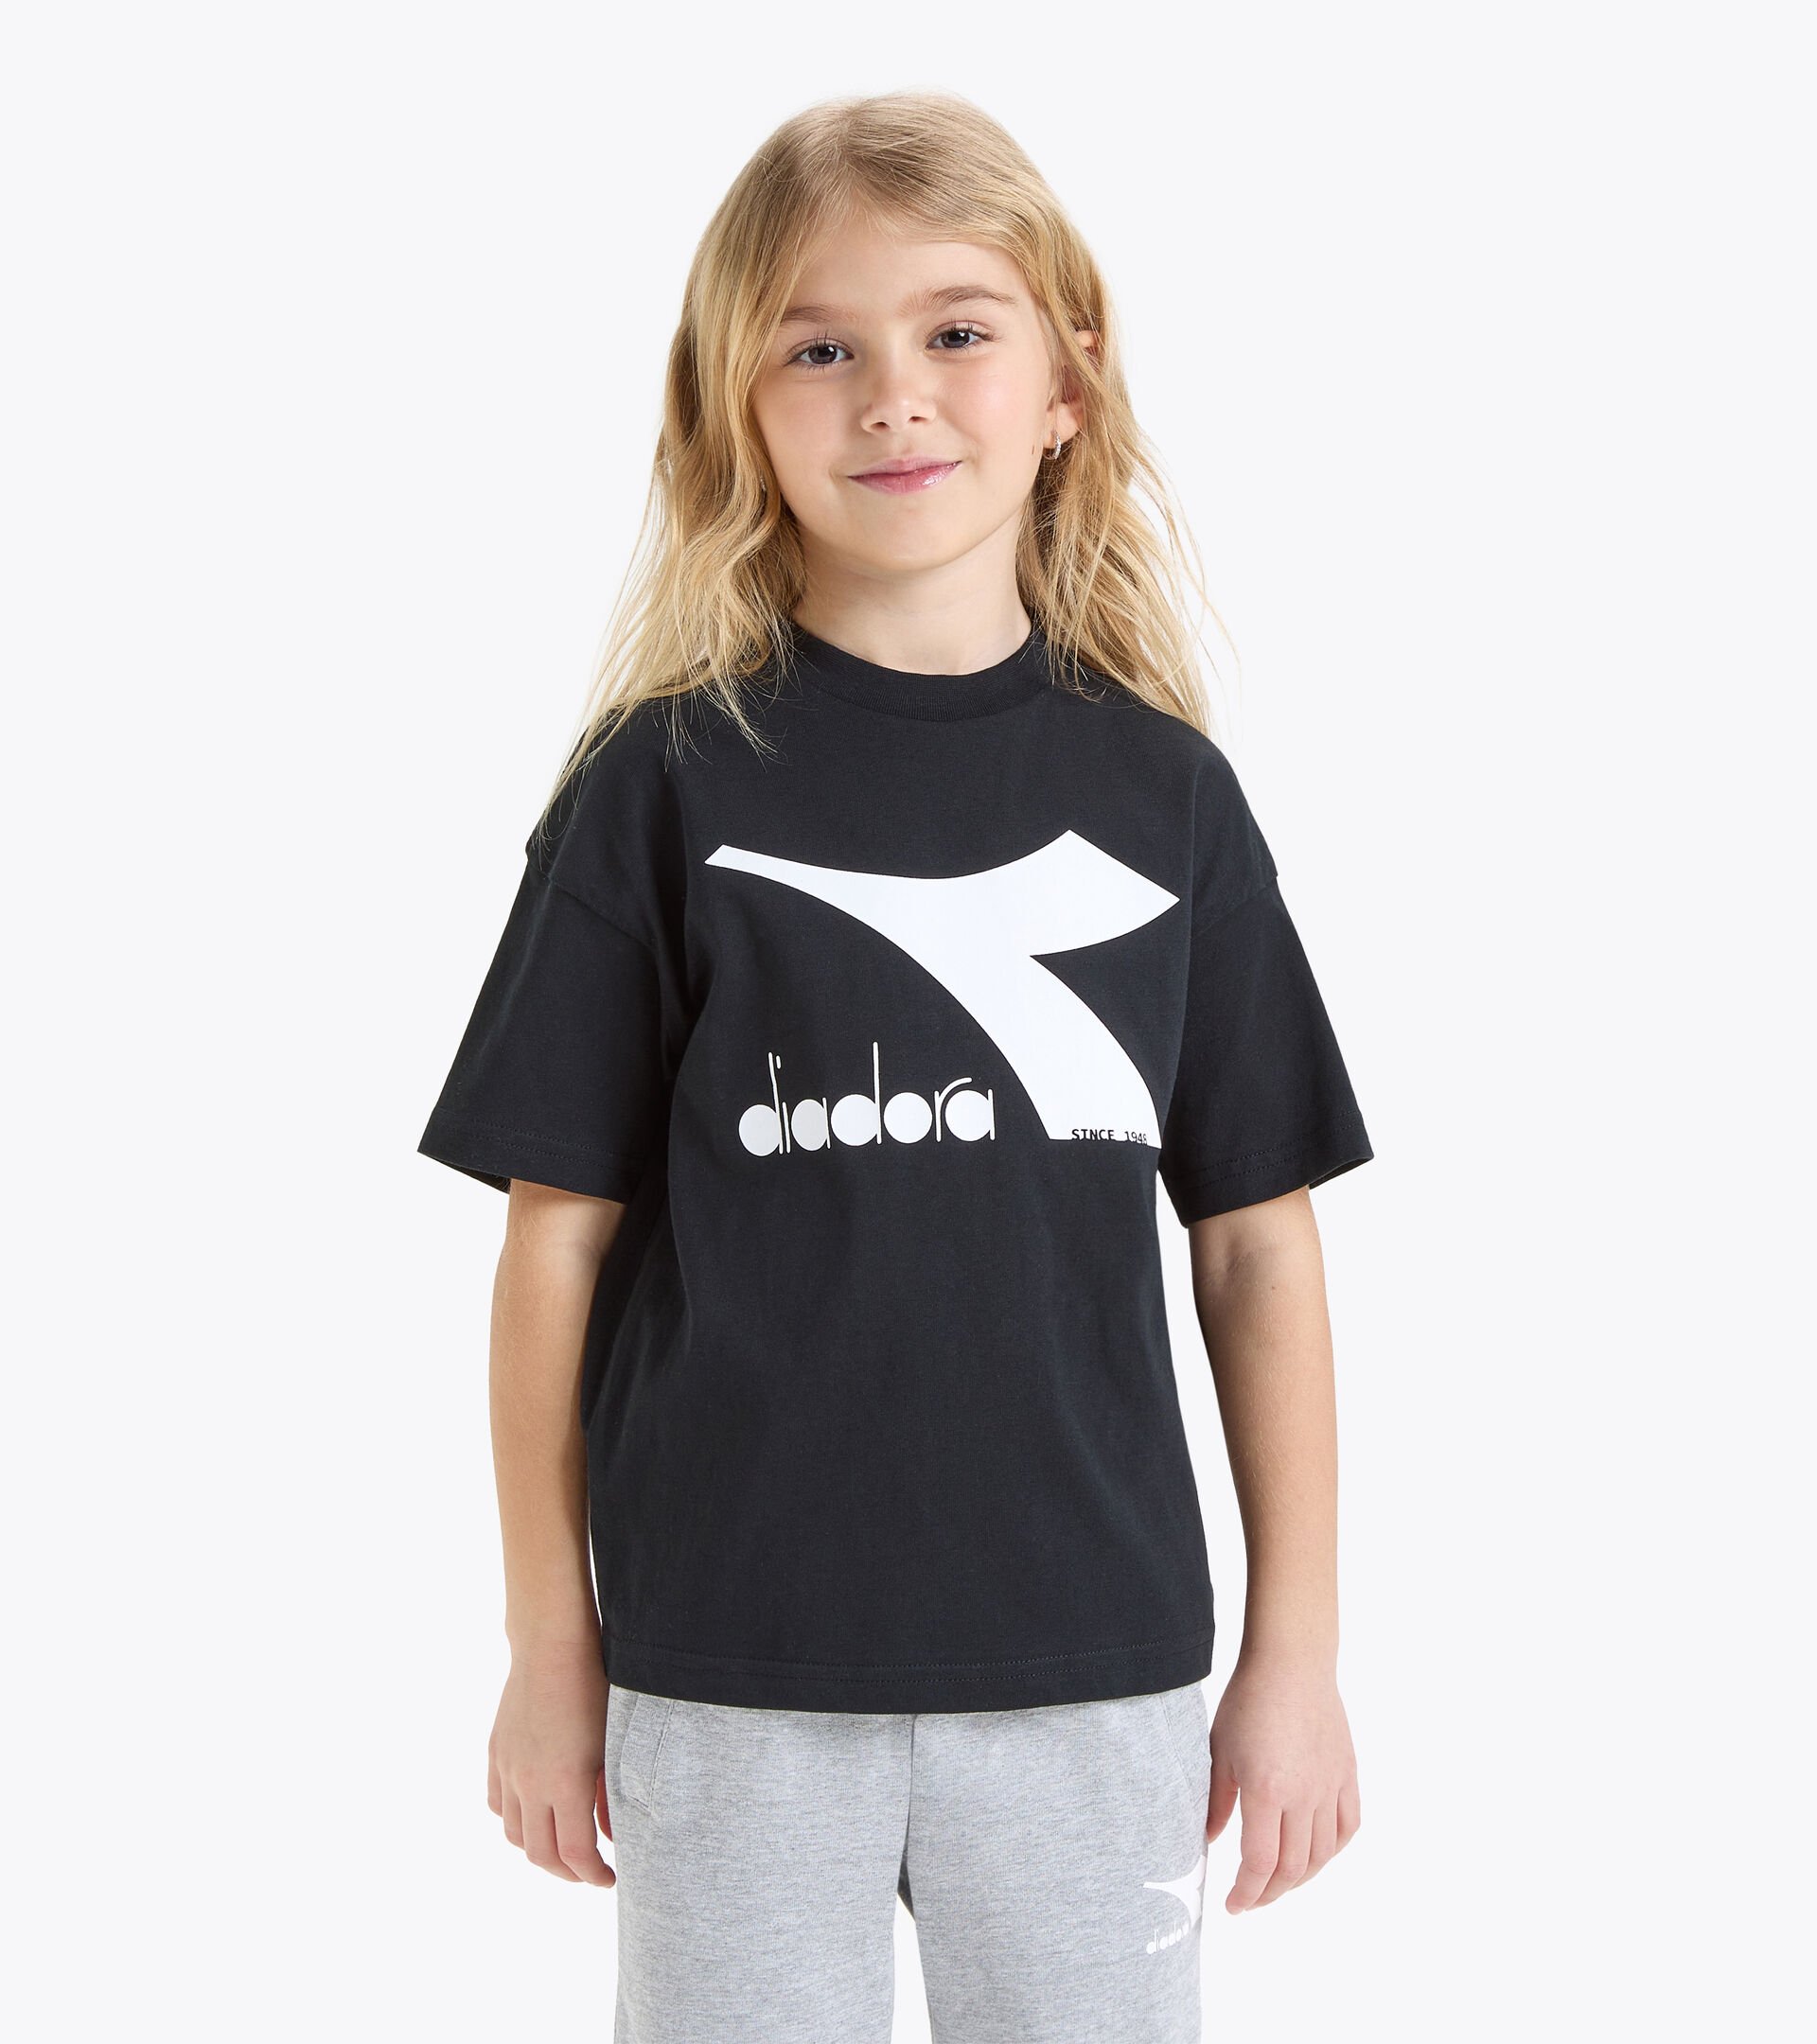 T-shirt de sport - Enfants
 JU.T-SHIRT SS BL NOIR - Diadora